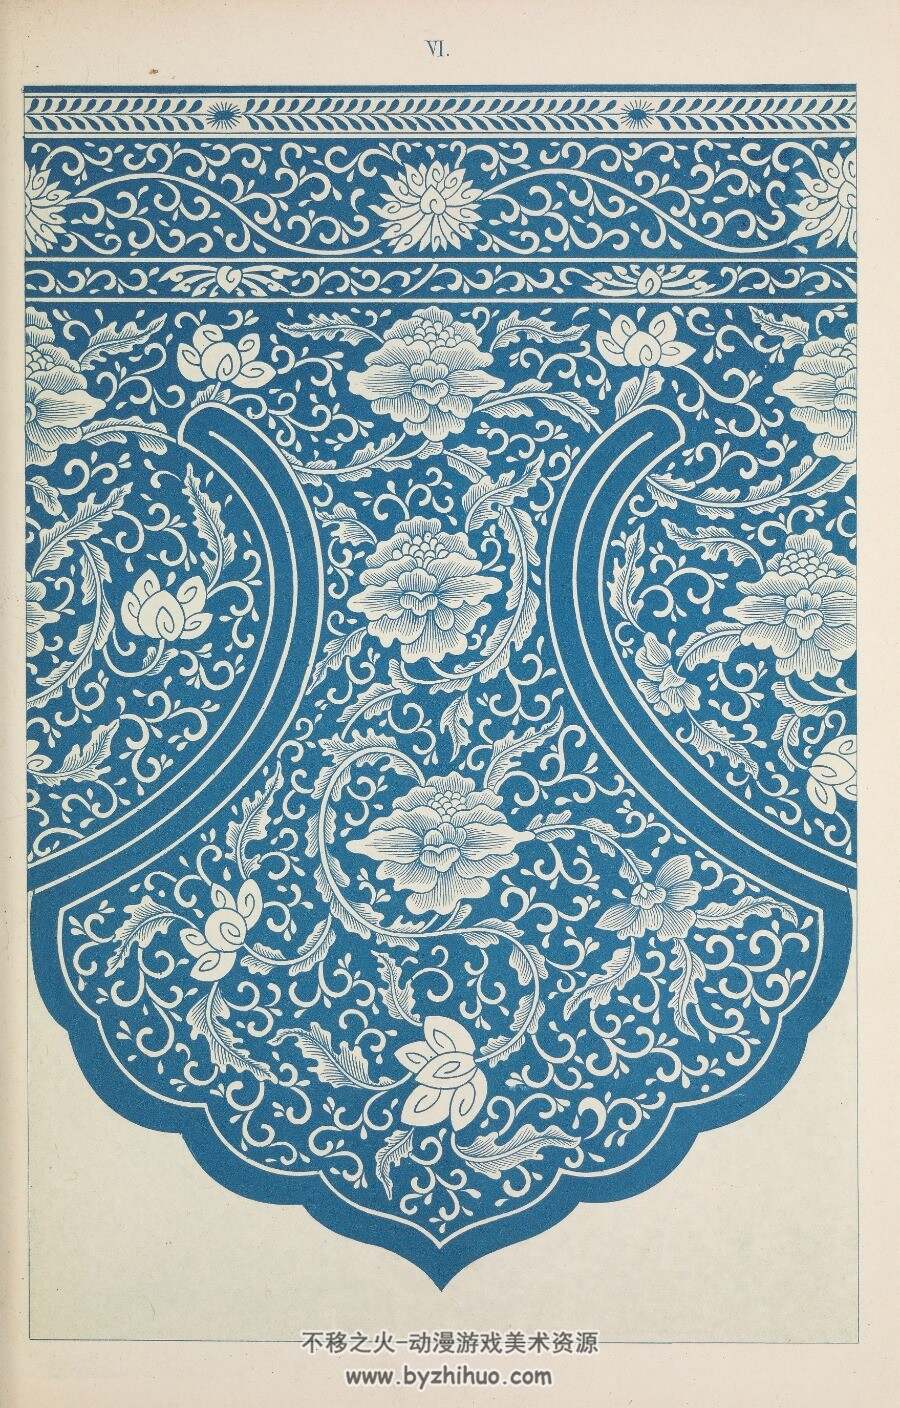 中国纹样集锦 美术素材参考 百度网盘下载